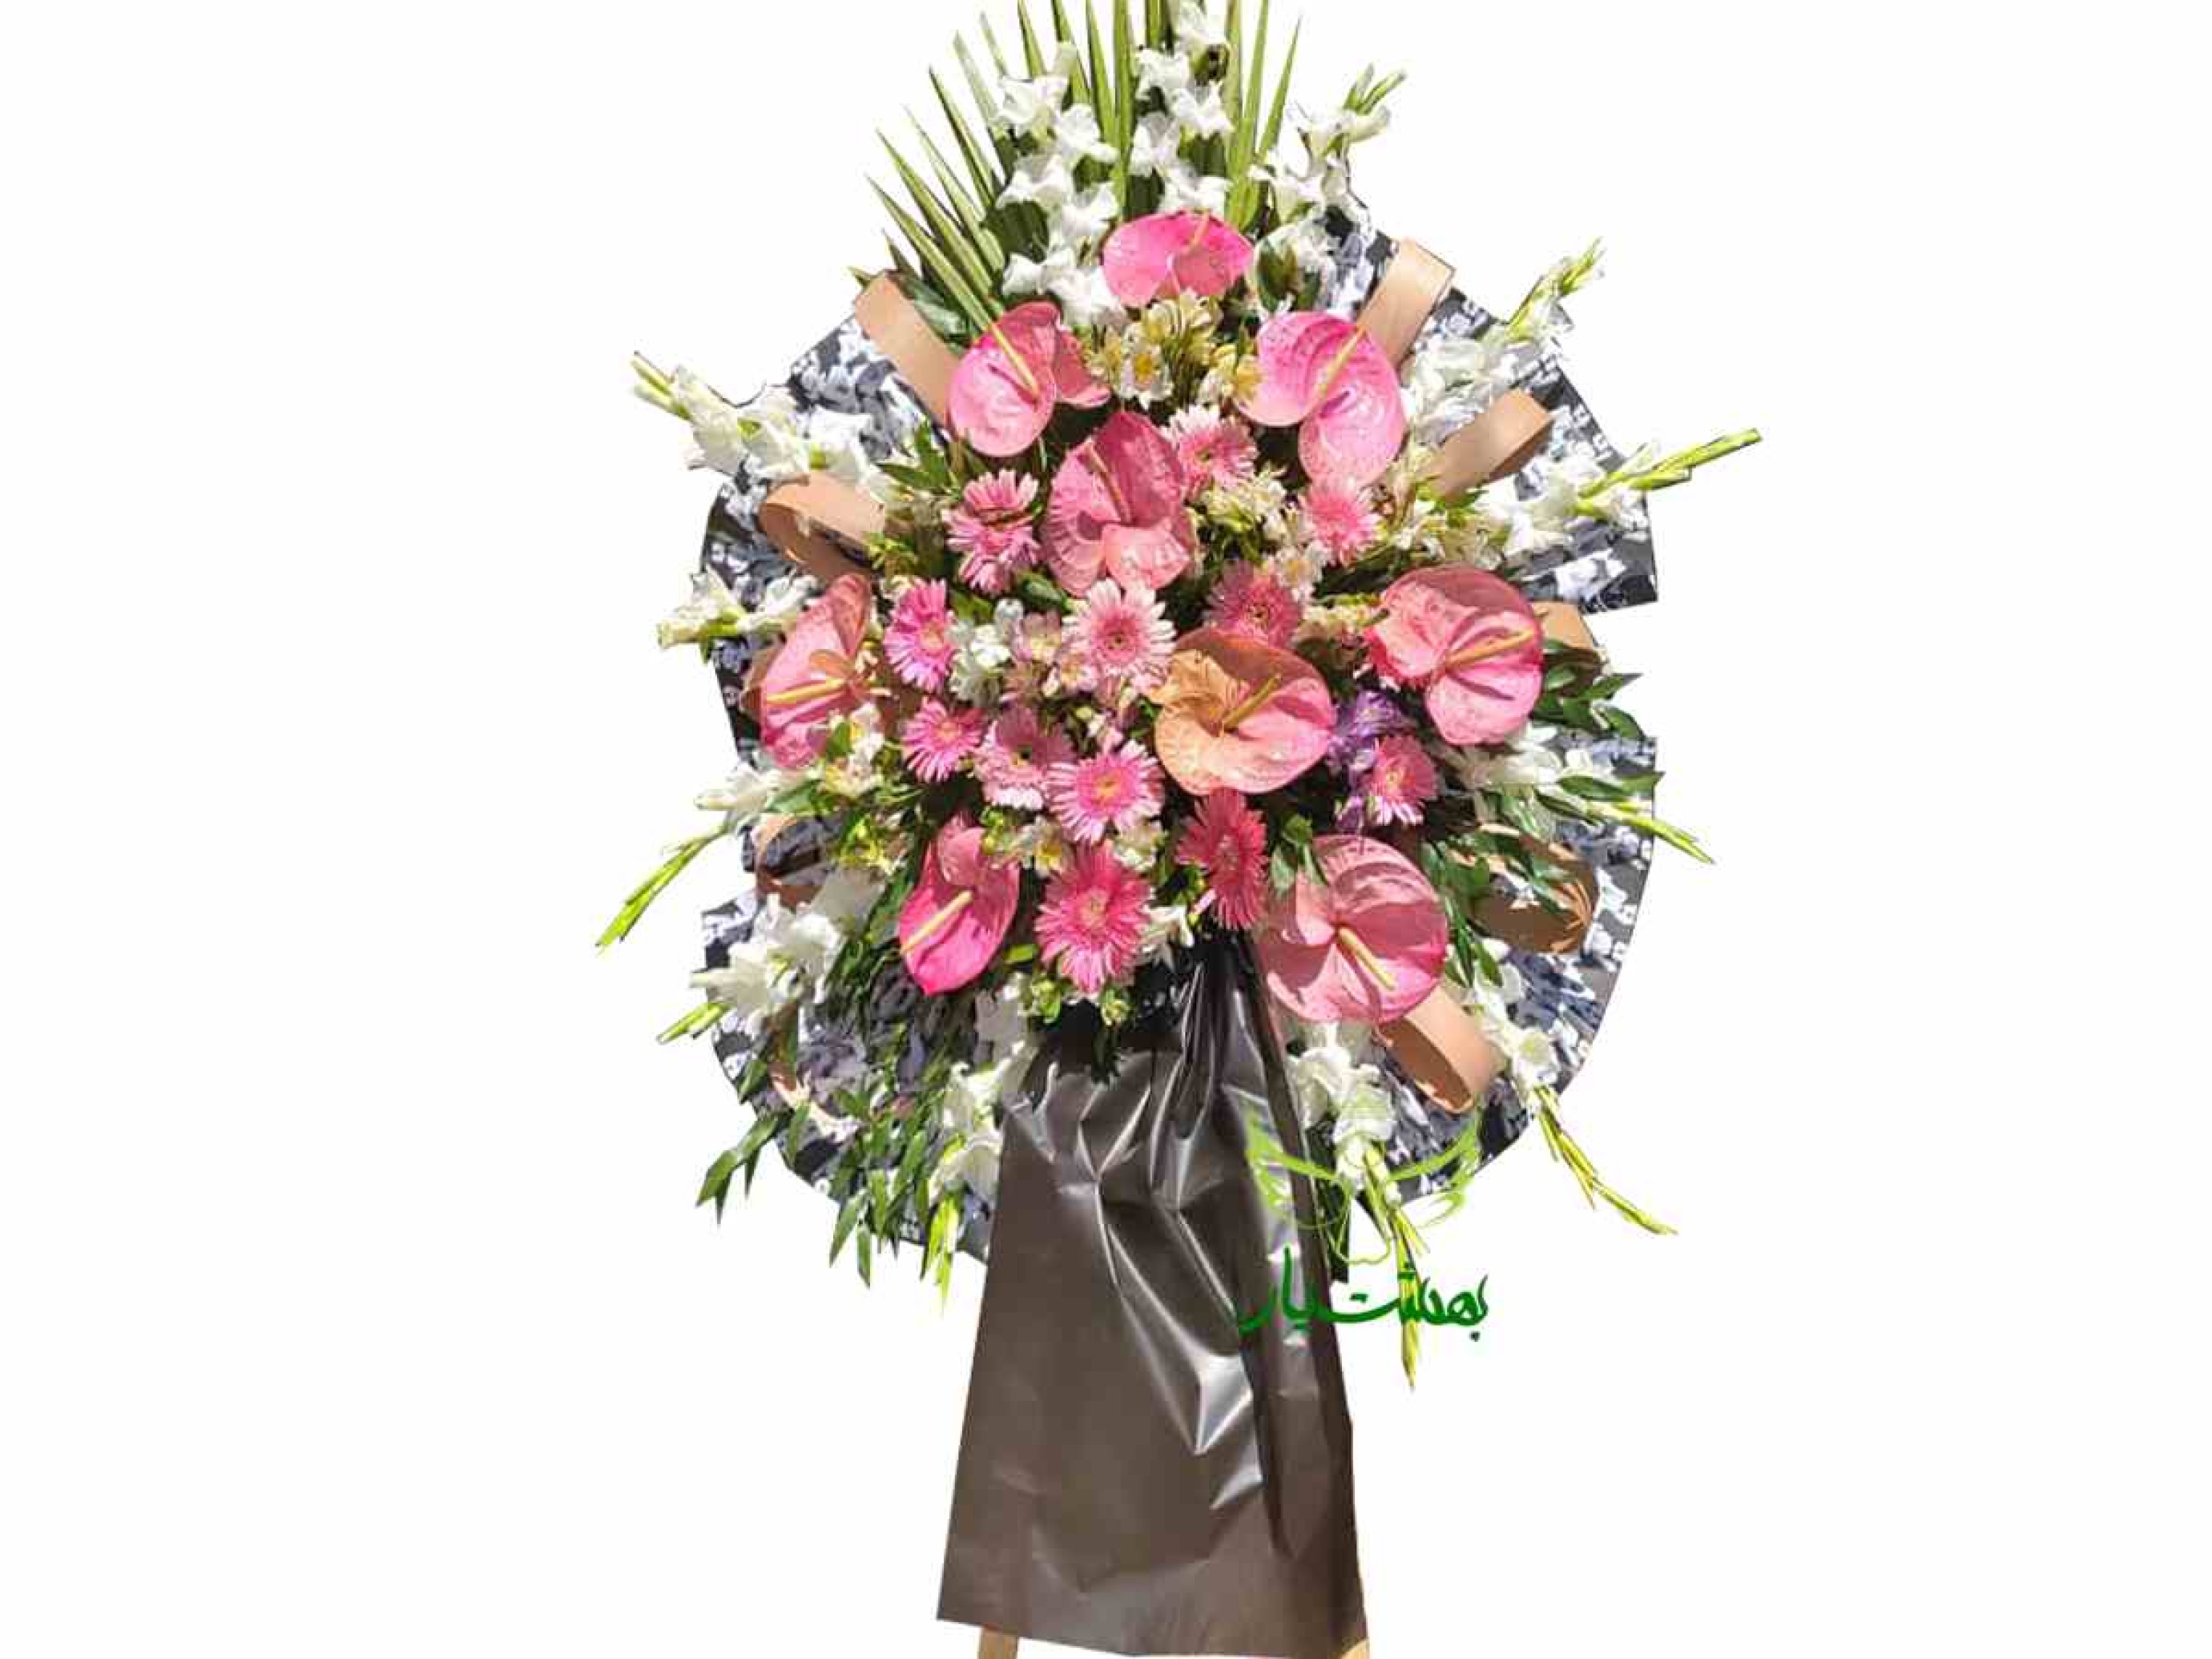  خرید انواع تاج گل ارزان قیمت برای بهشت زهرا 